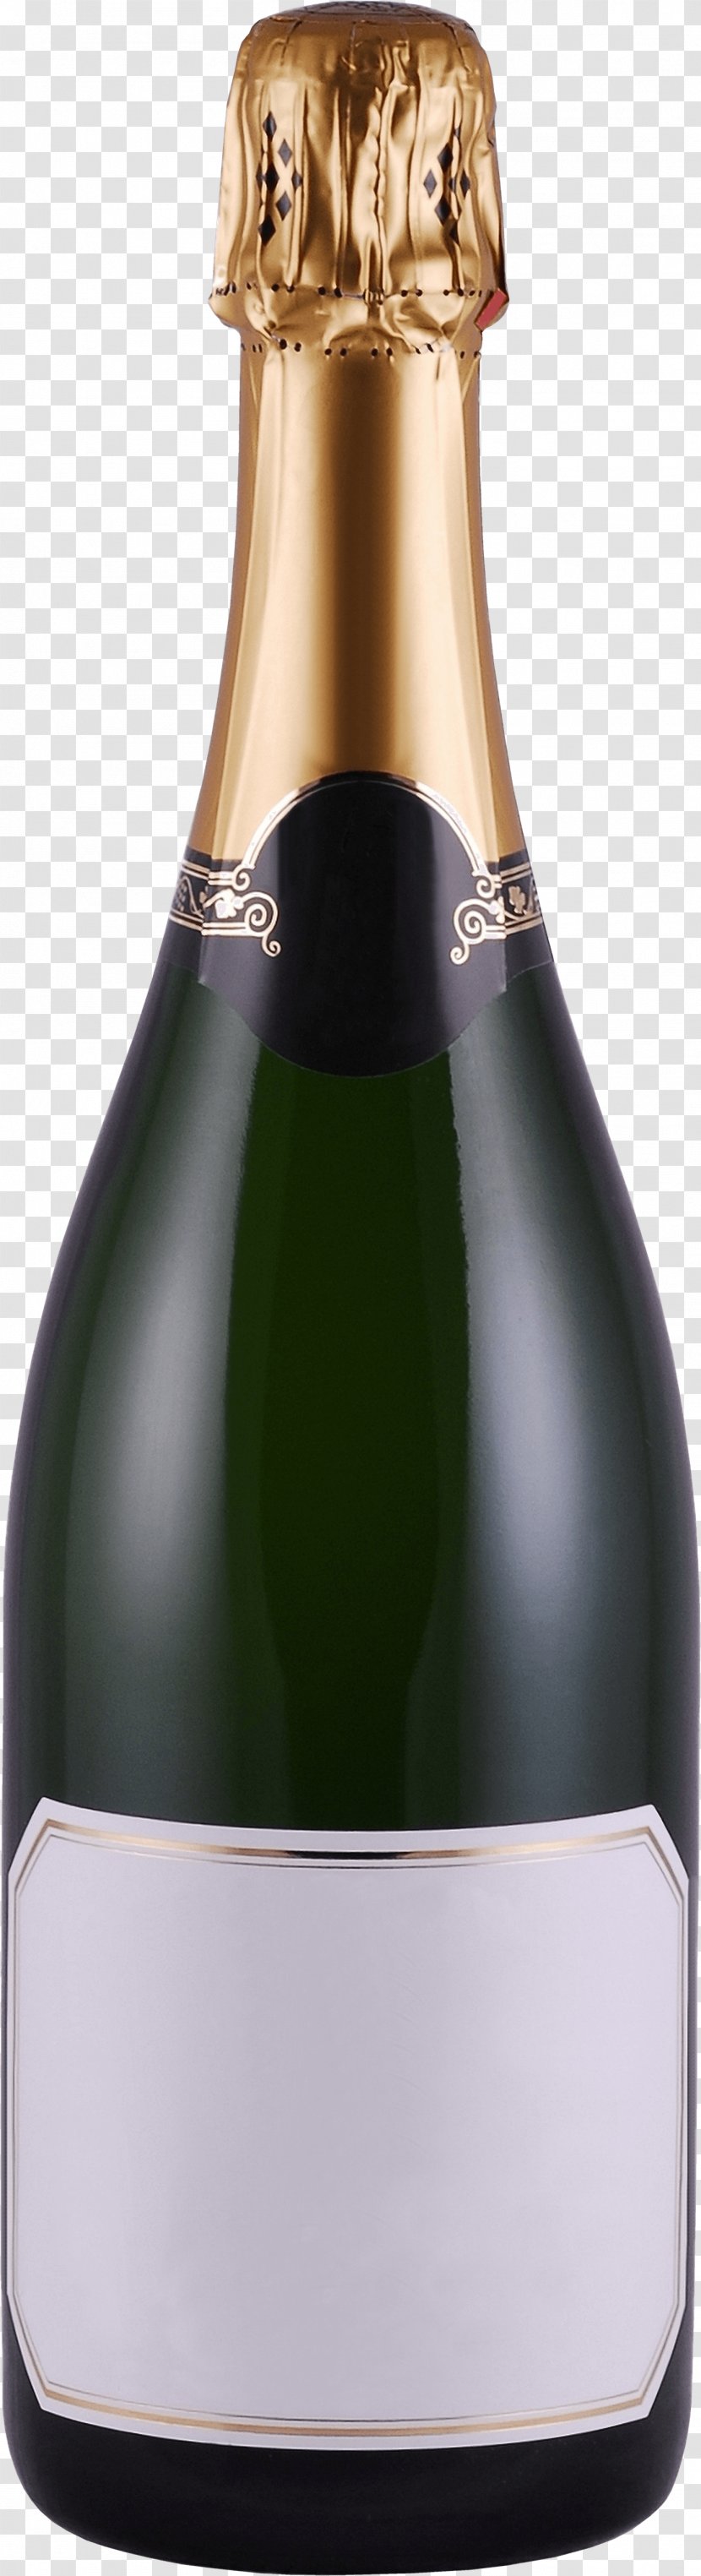 Champagne Bottle - Alcoholic Beverage Transparent PNG